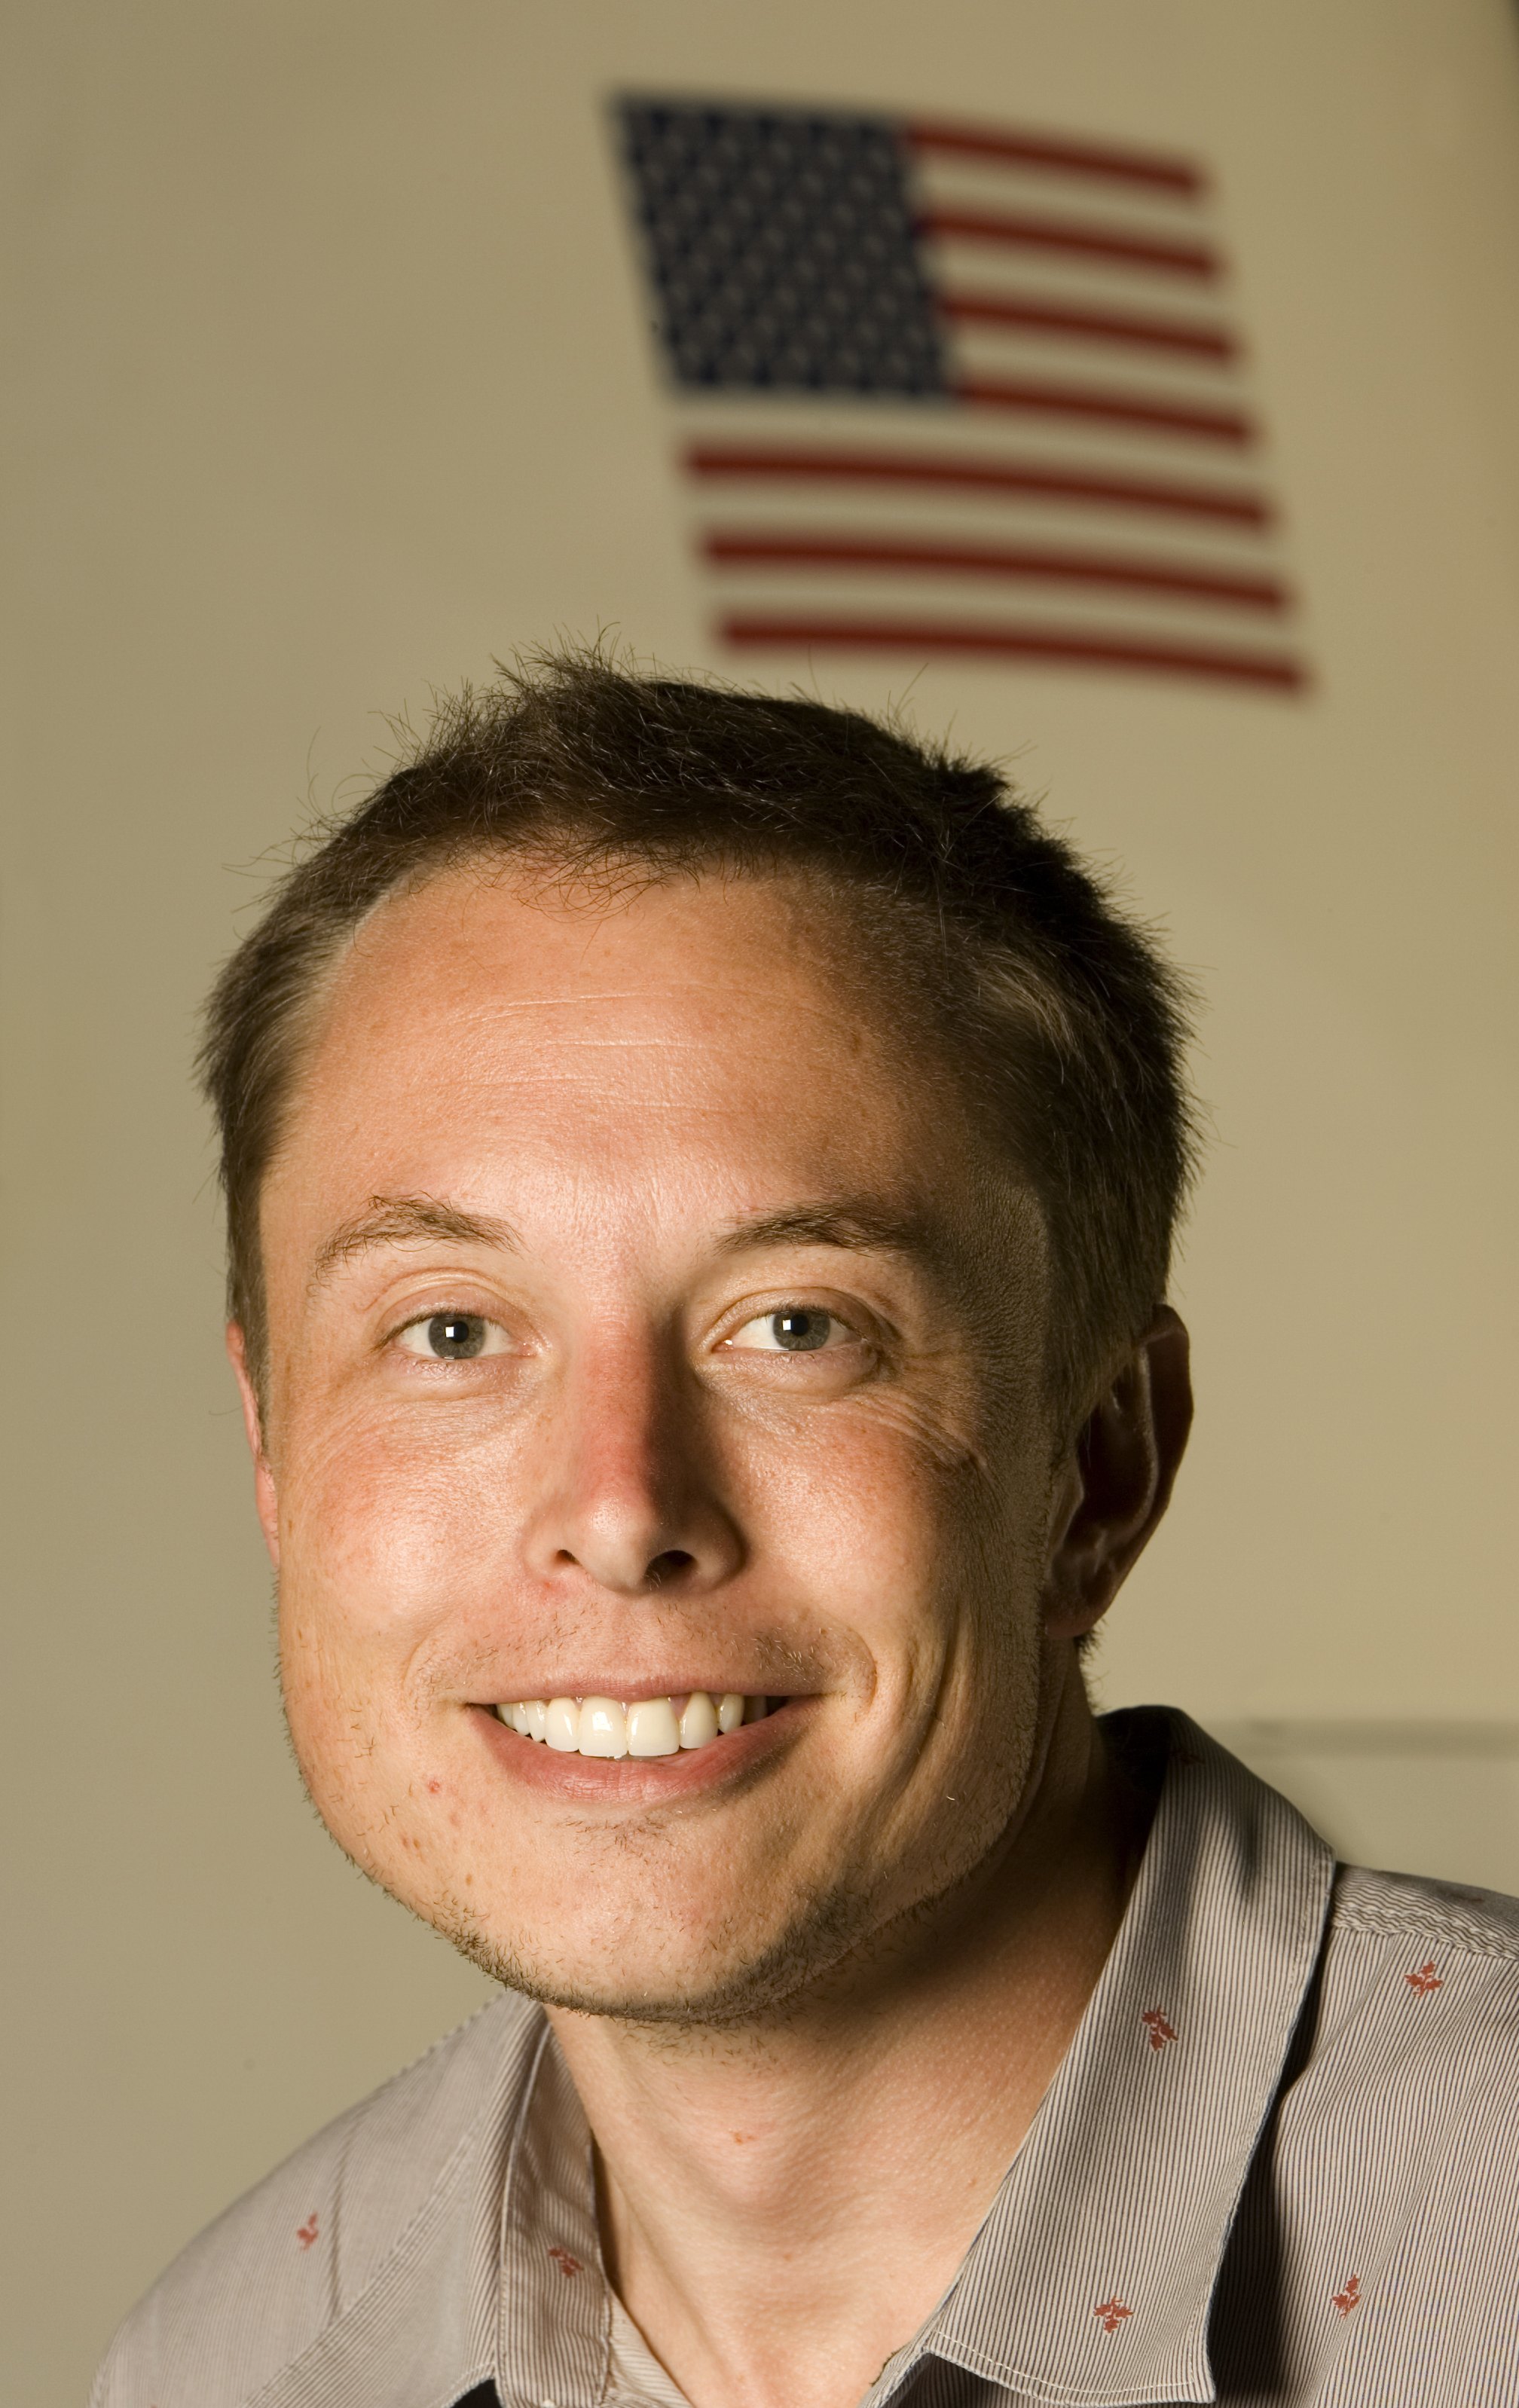 Un retrato de Elon Musk el 25 de julio de 2008, en Los Ángeles, California. | Fuente: Getty Images